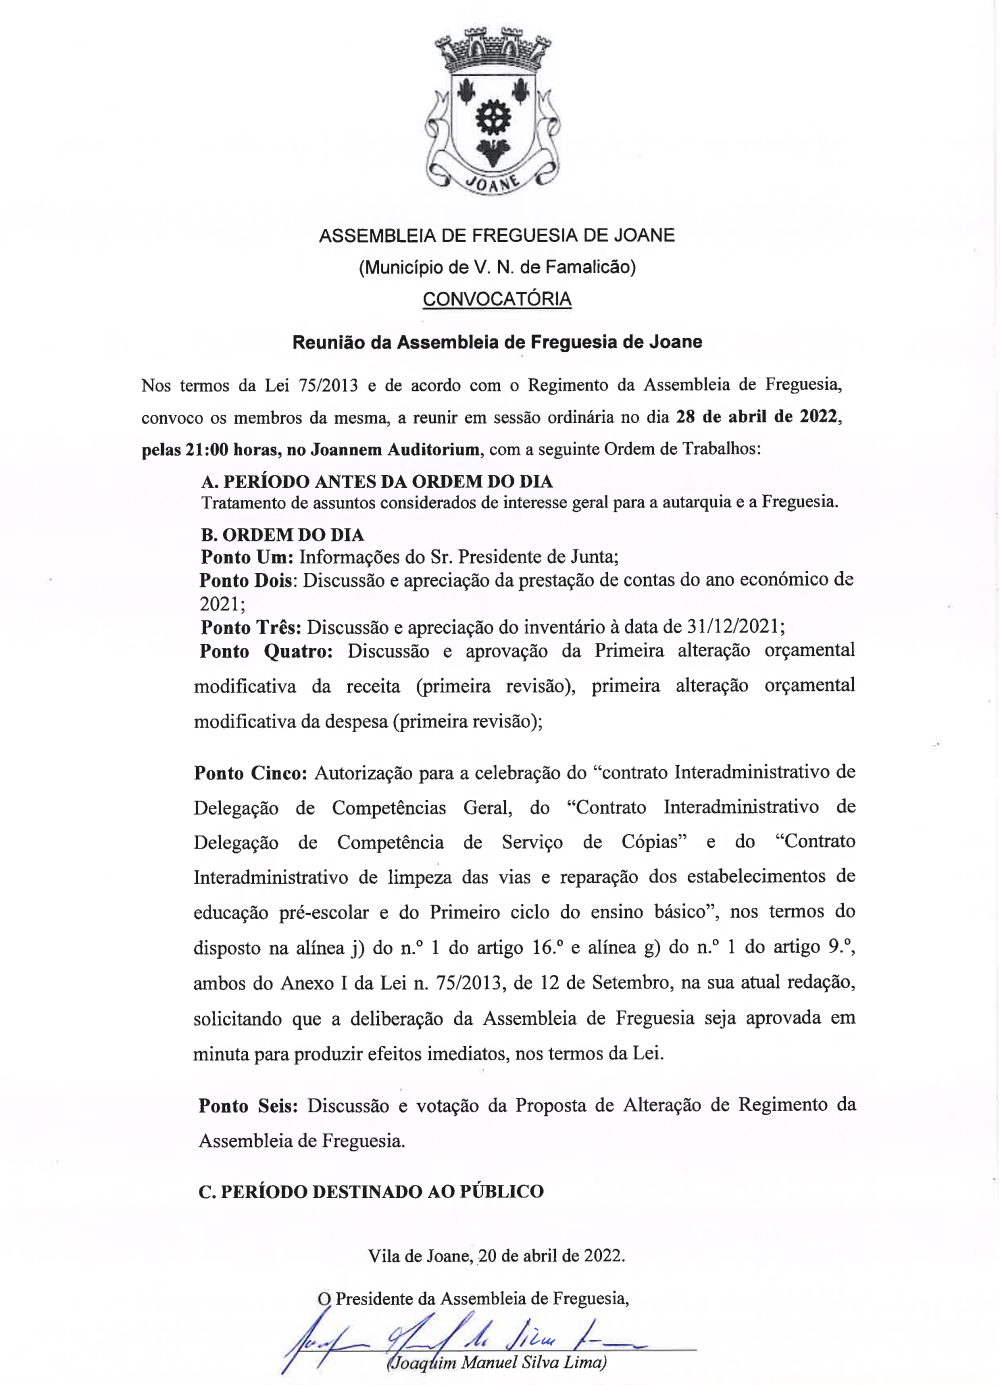 Convocatória da Assembleia de Freguesia - Abril 2022